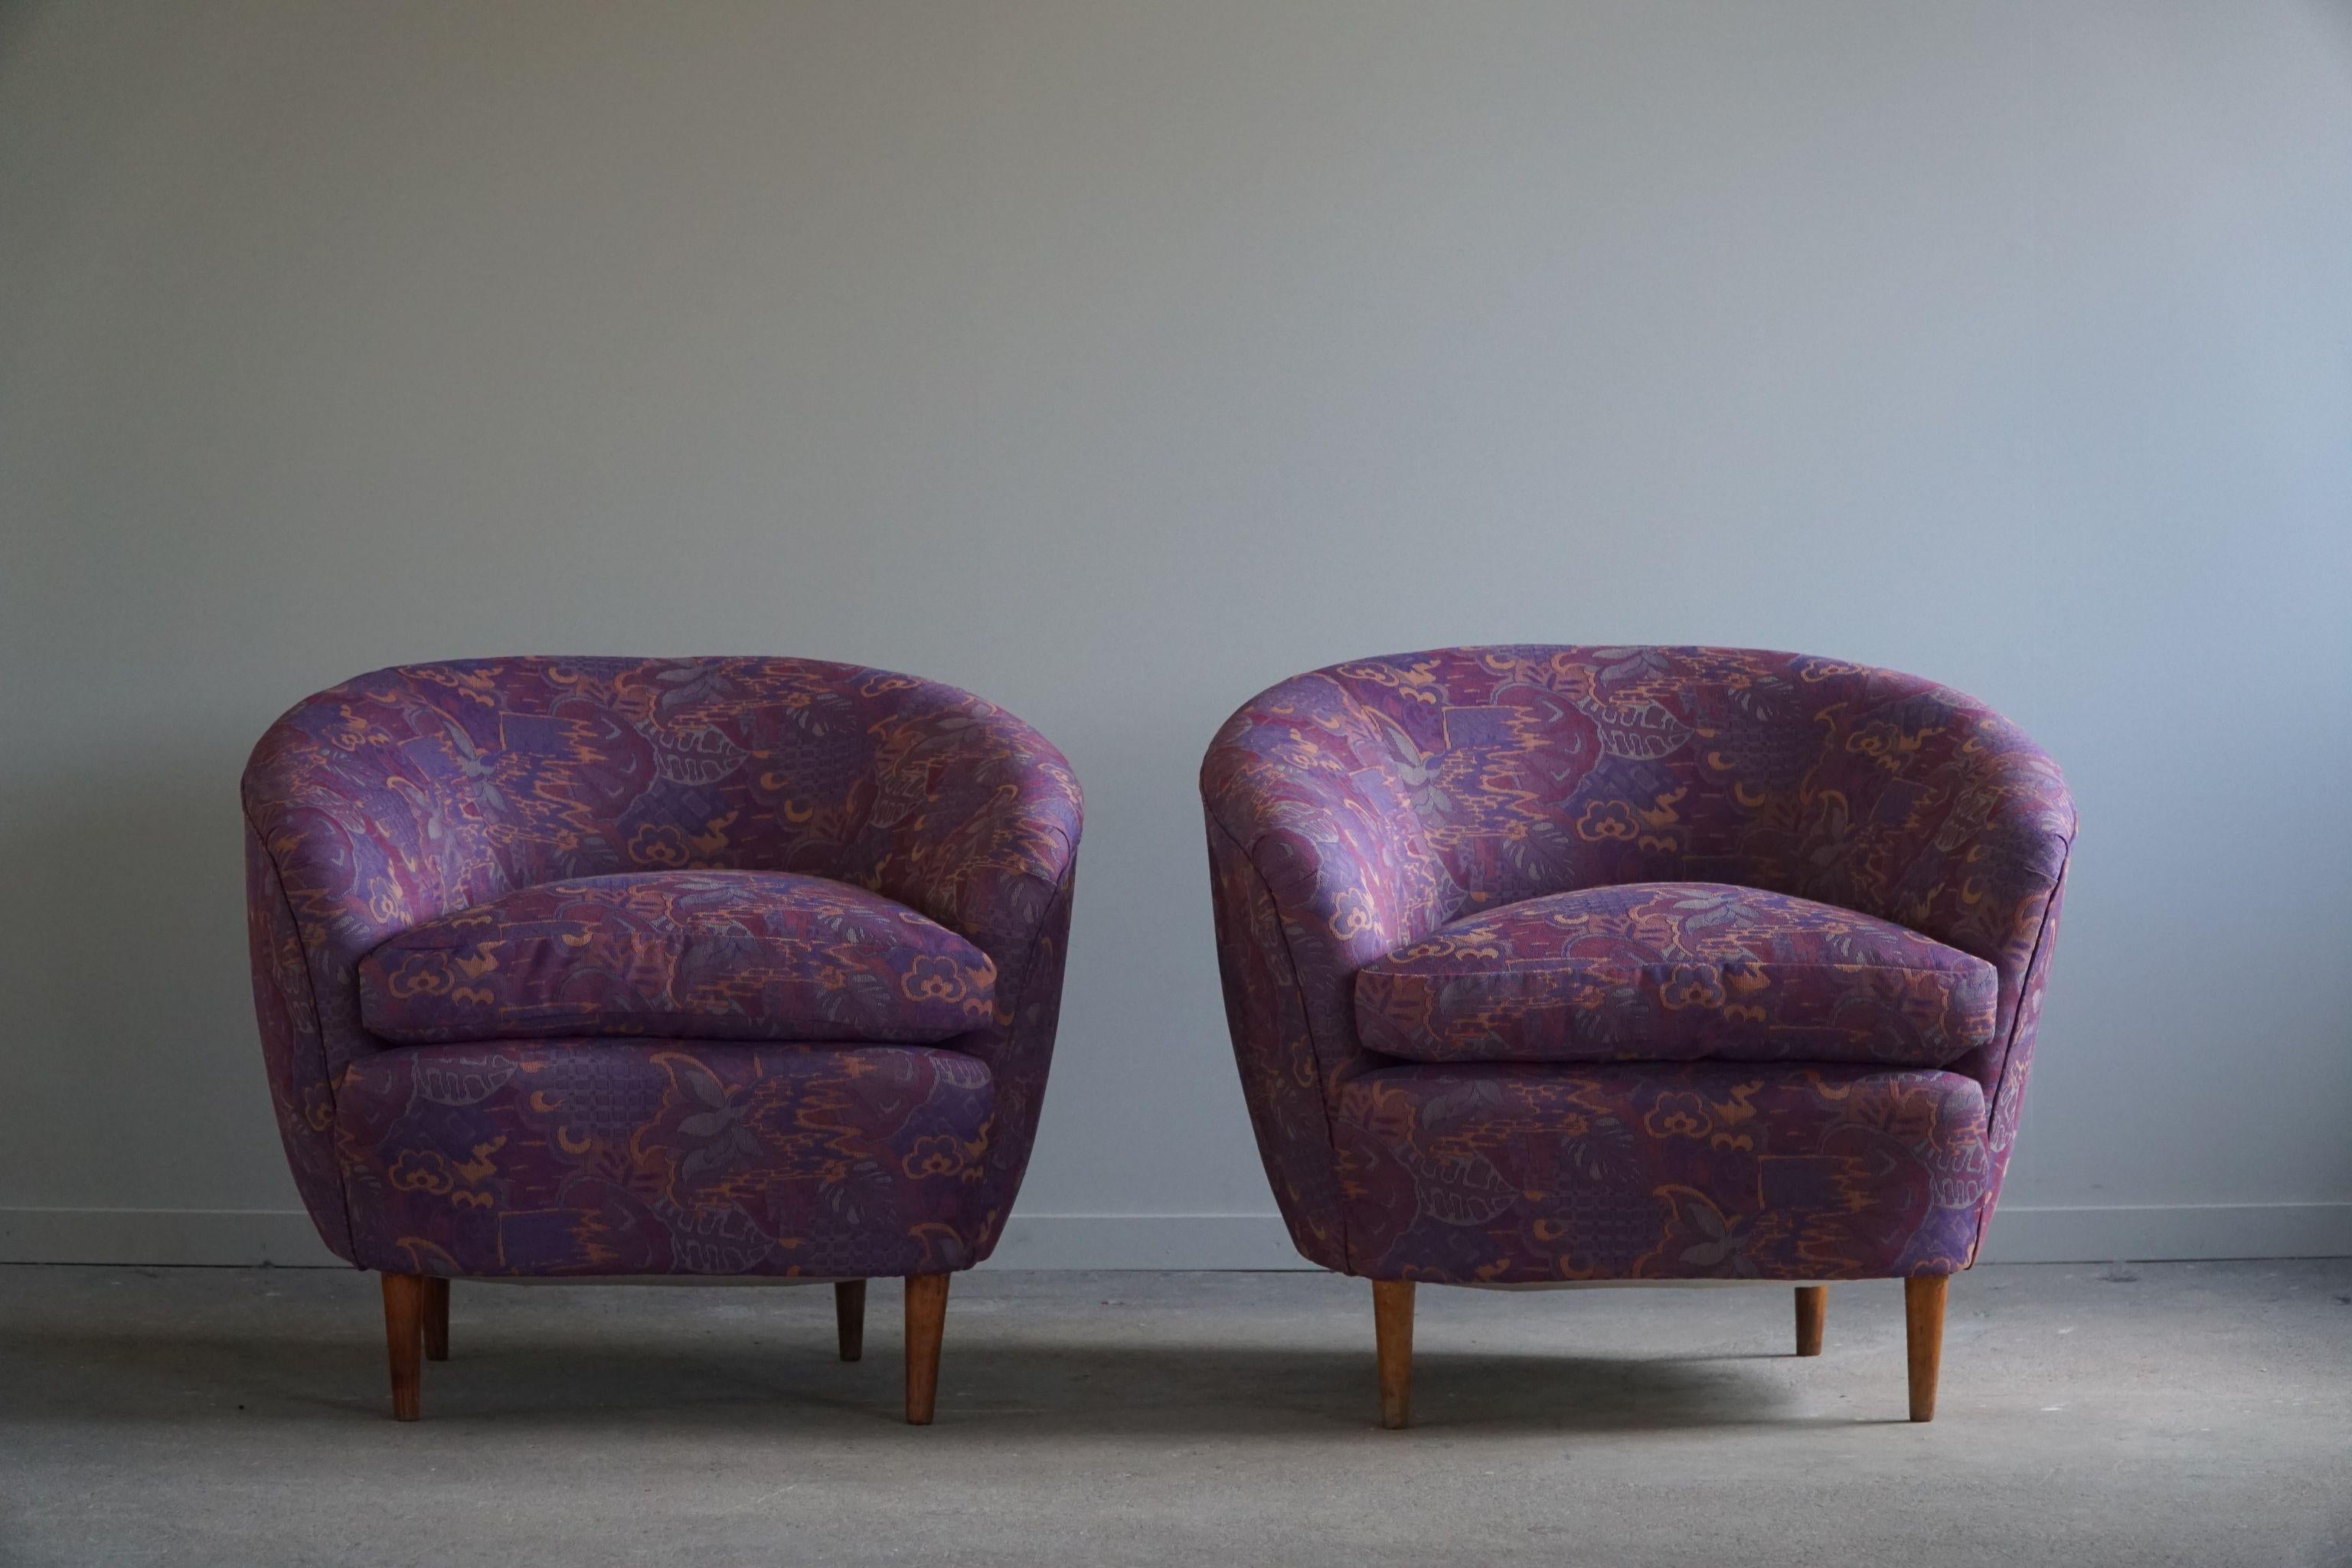 Une magnifique paire de fauteuils club incurvés, retapissés dans un luxueux tissu vintage stocké dans les années 1980. Ce tissu aux motifs agréables complète parfaitement les courbes douces. Conçu par le célèbre designer italien Gio Ponti pour Casa